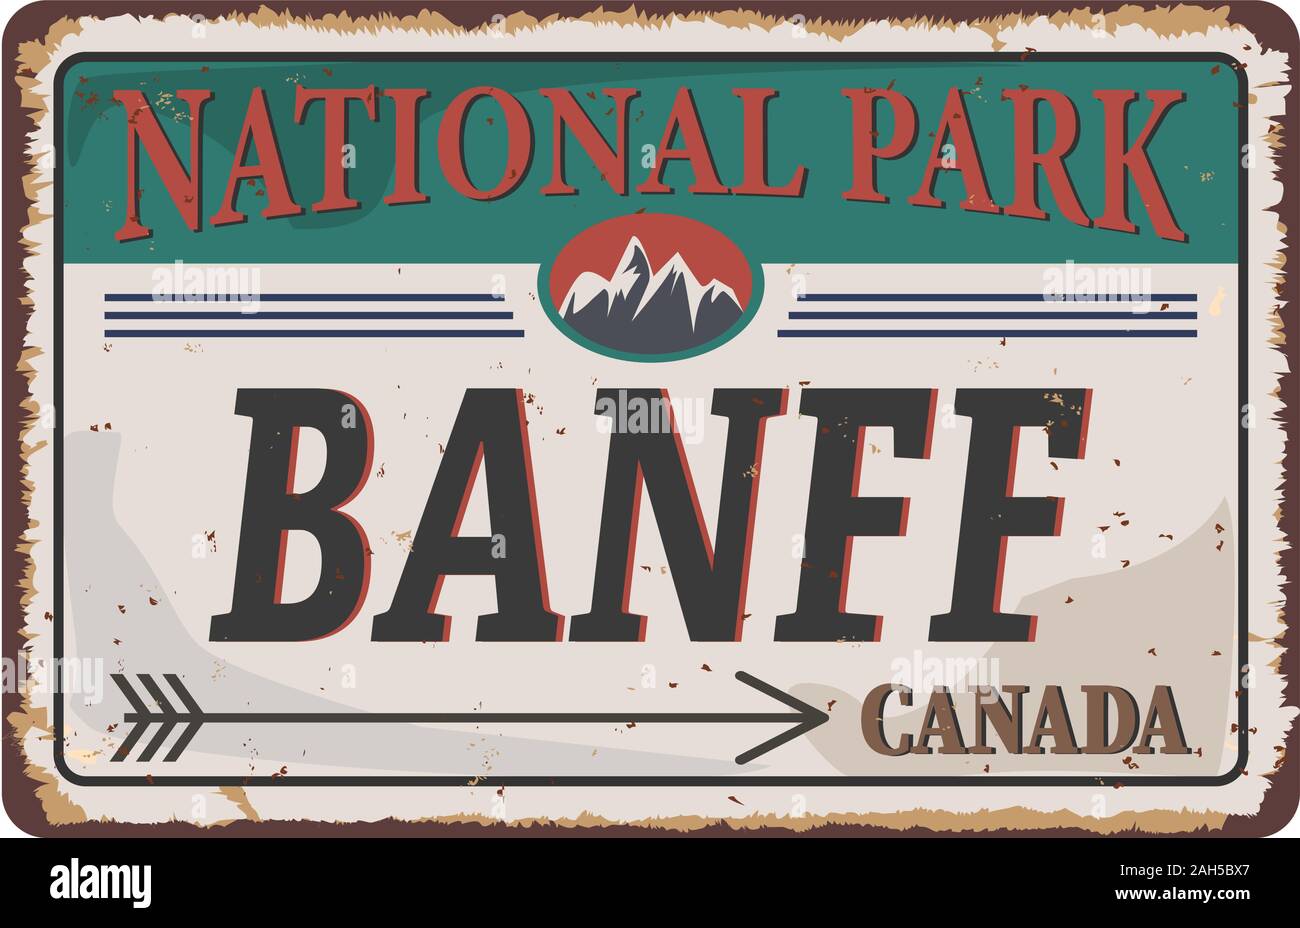 Banff National Park grunge rostiges Metall Zeichen auf weißem Hintergrund, Vector Illustration Stock Vektor